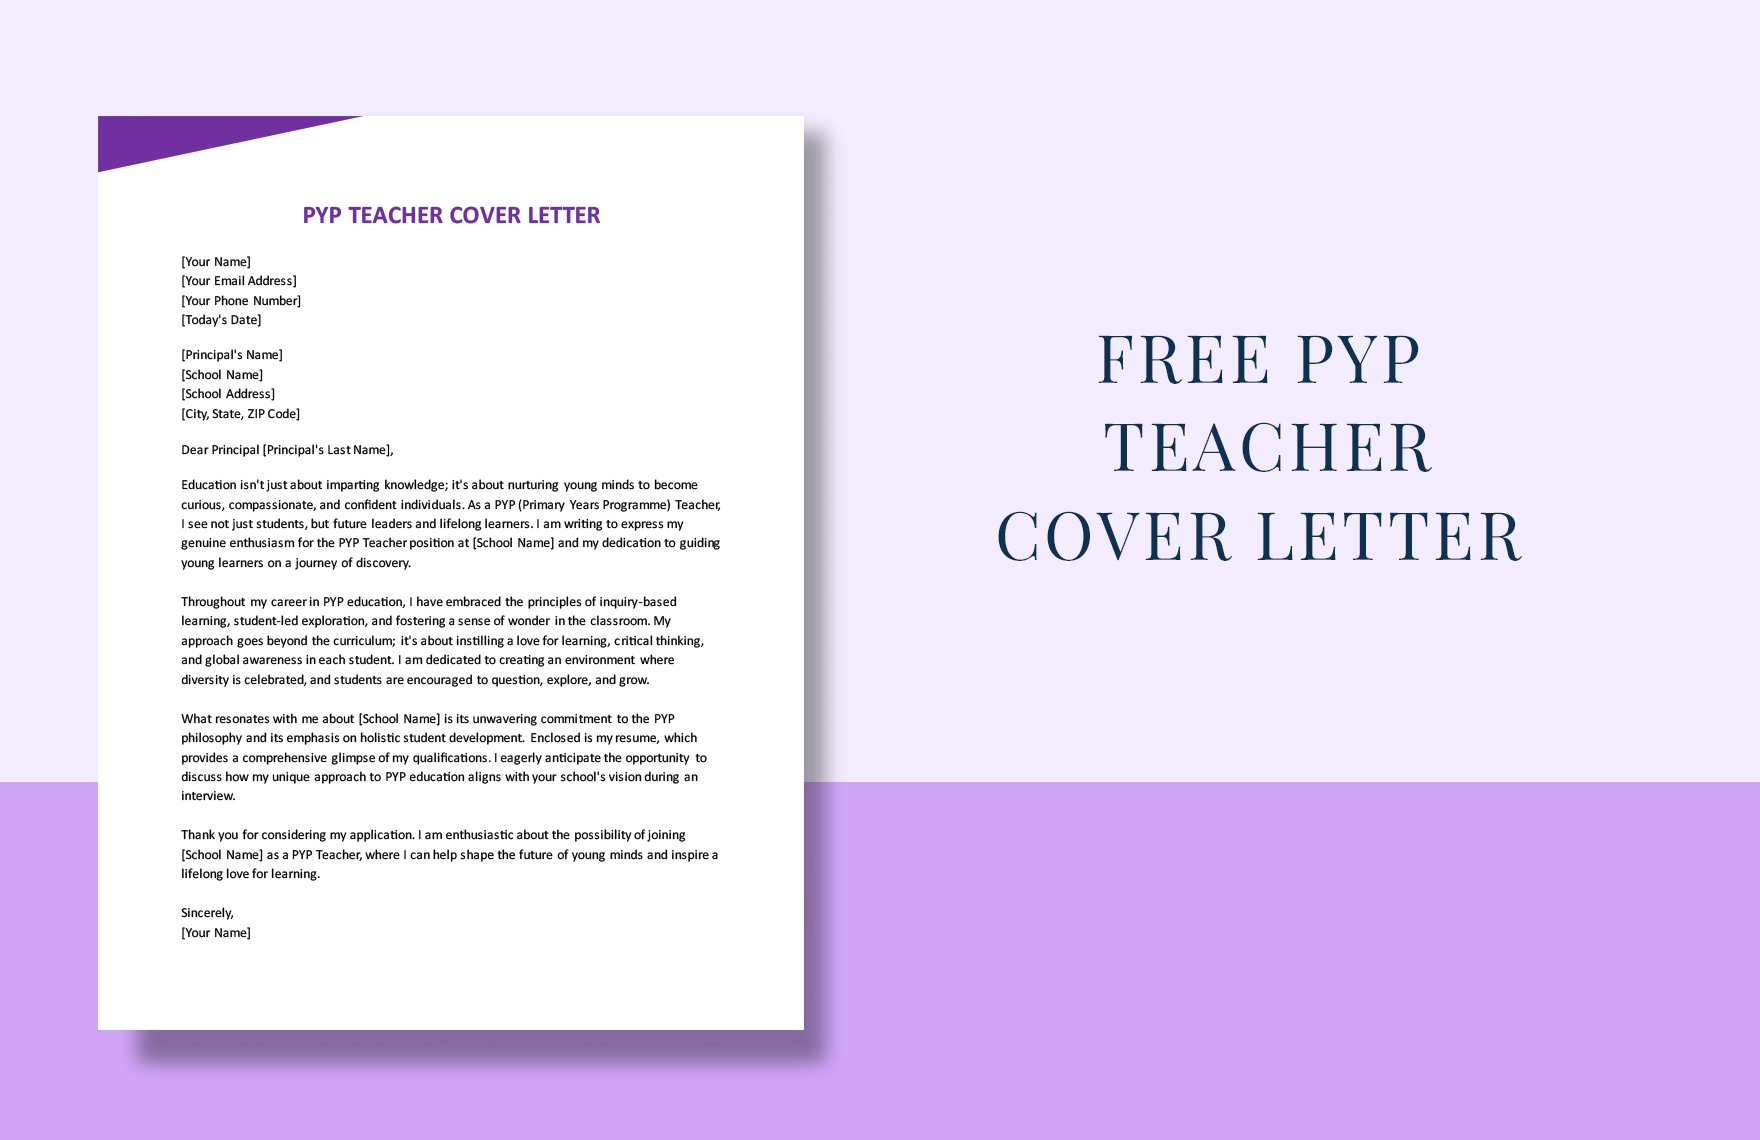 PYP Teacher Cover Letter